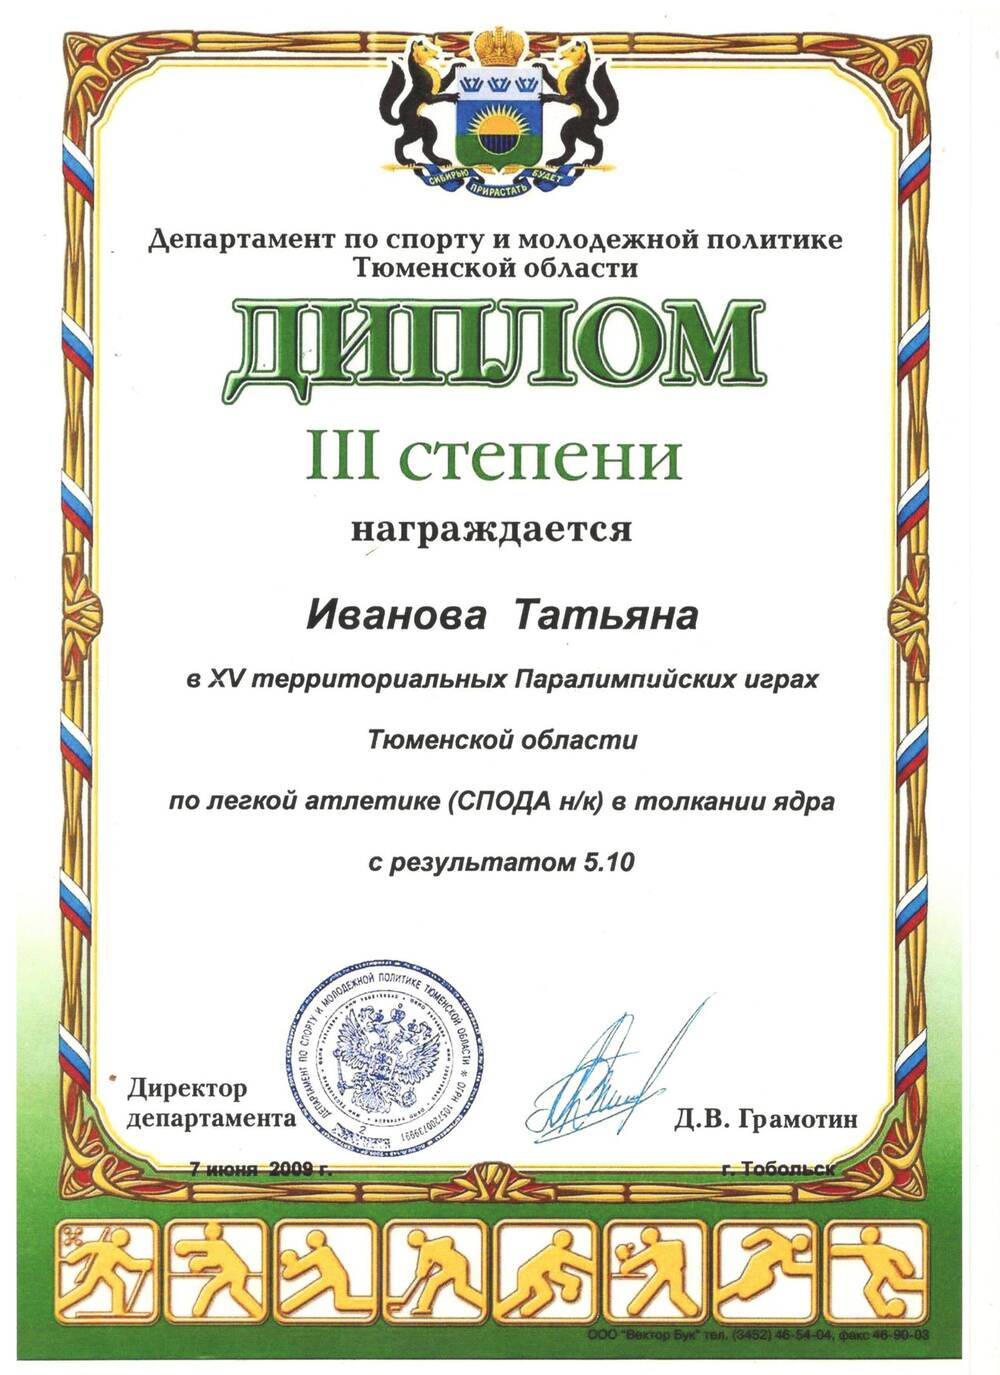 Диплом III ст. Ивановой Татьяне